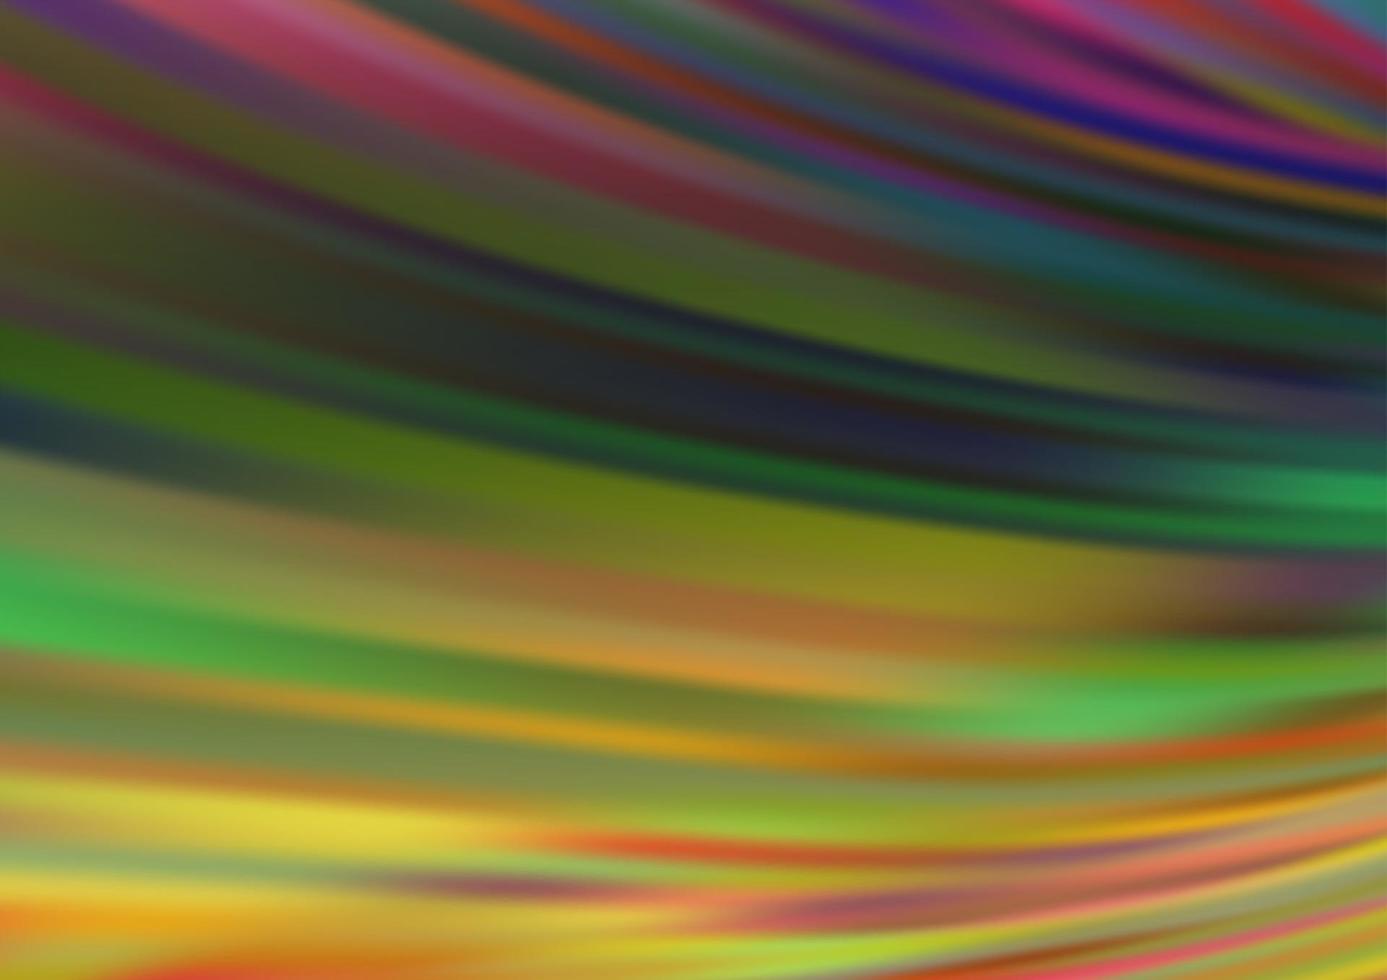 mörk mångfärgad, regnbågsvektormall med böjda linjer. vektor